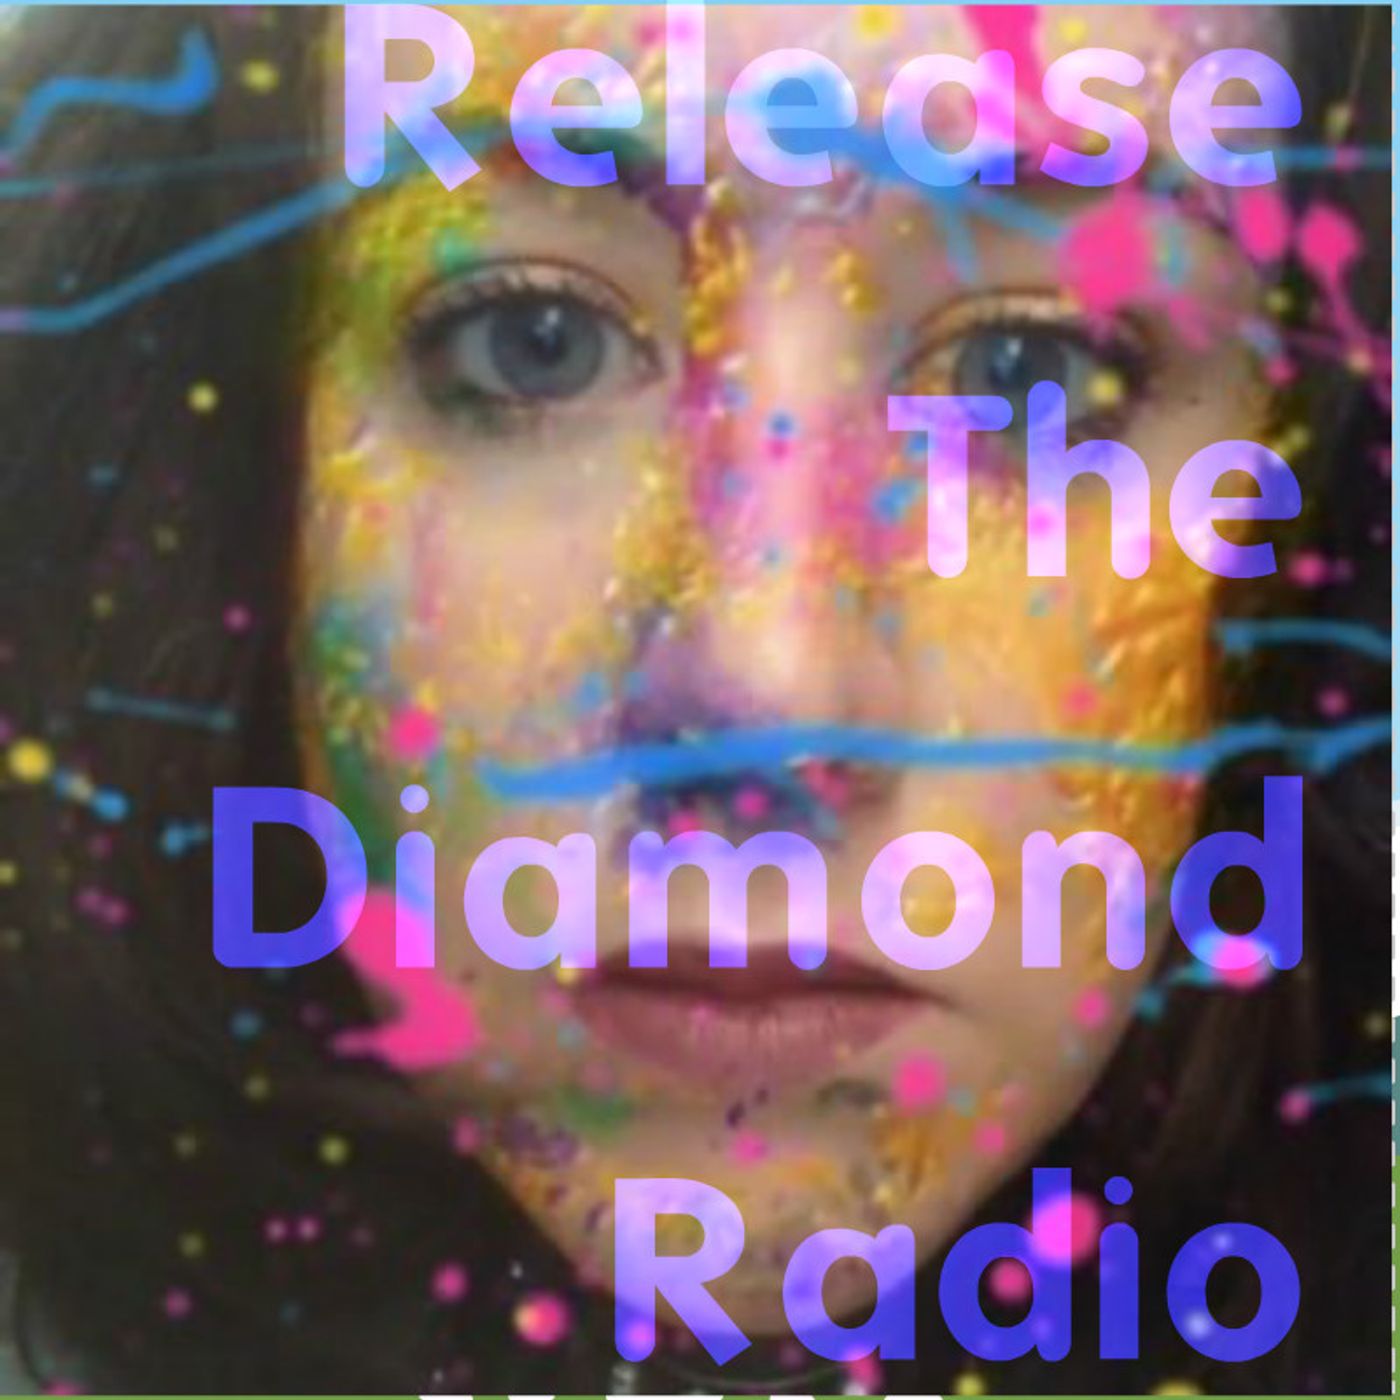 RELEASE THE DIAMOND RADIO's tracks